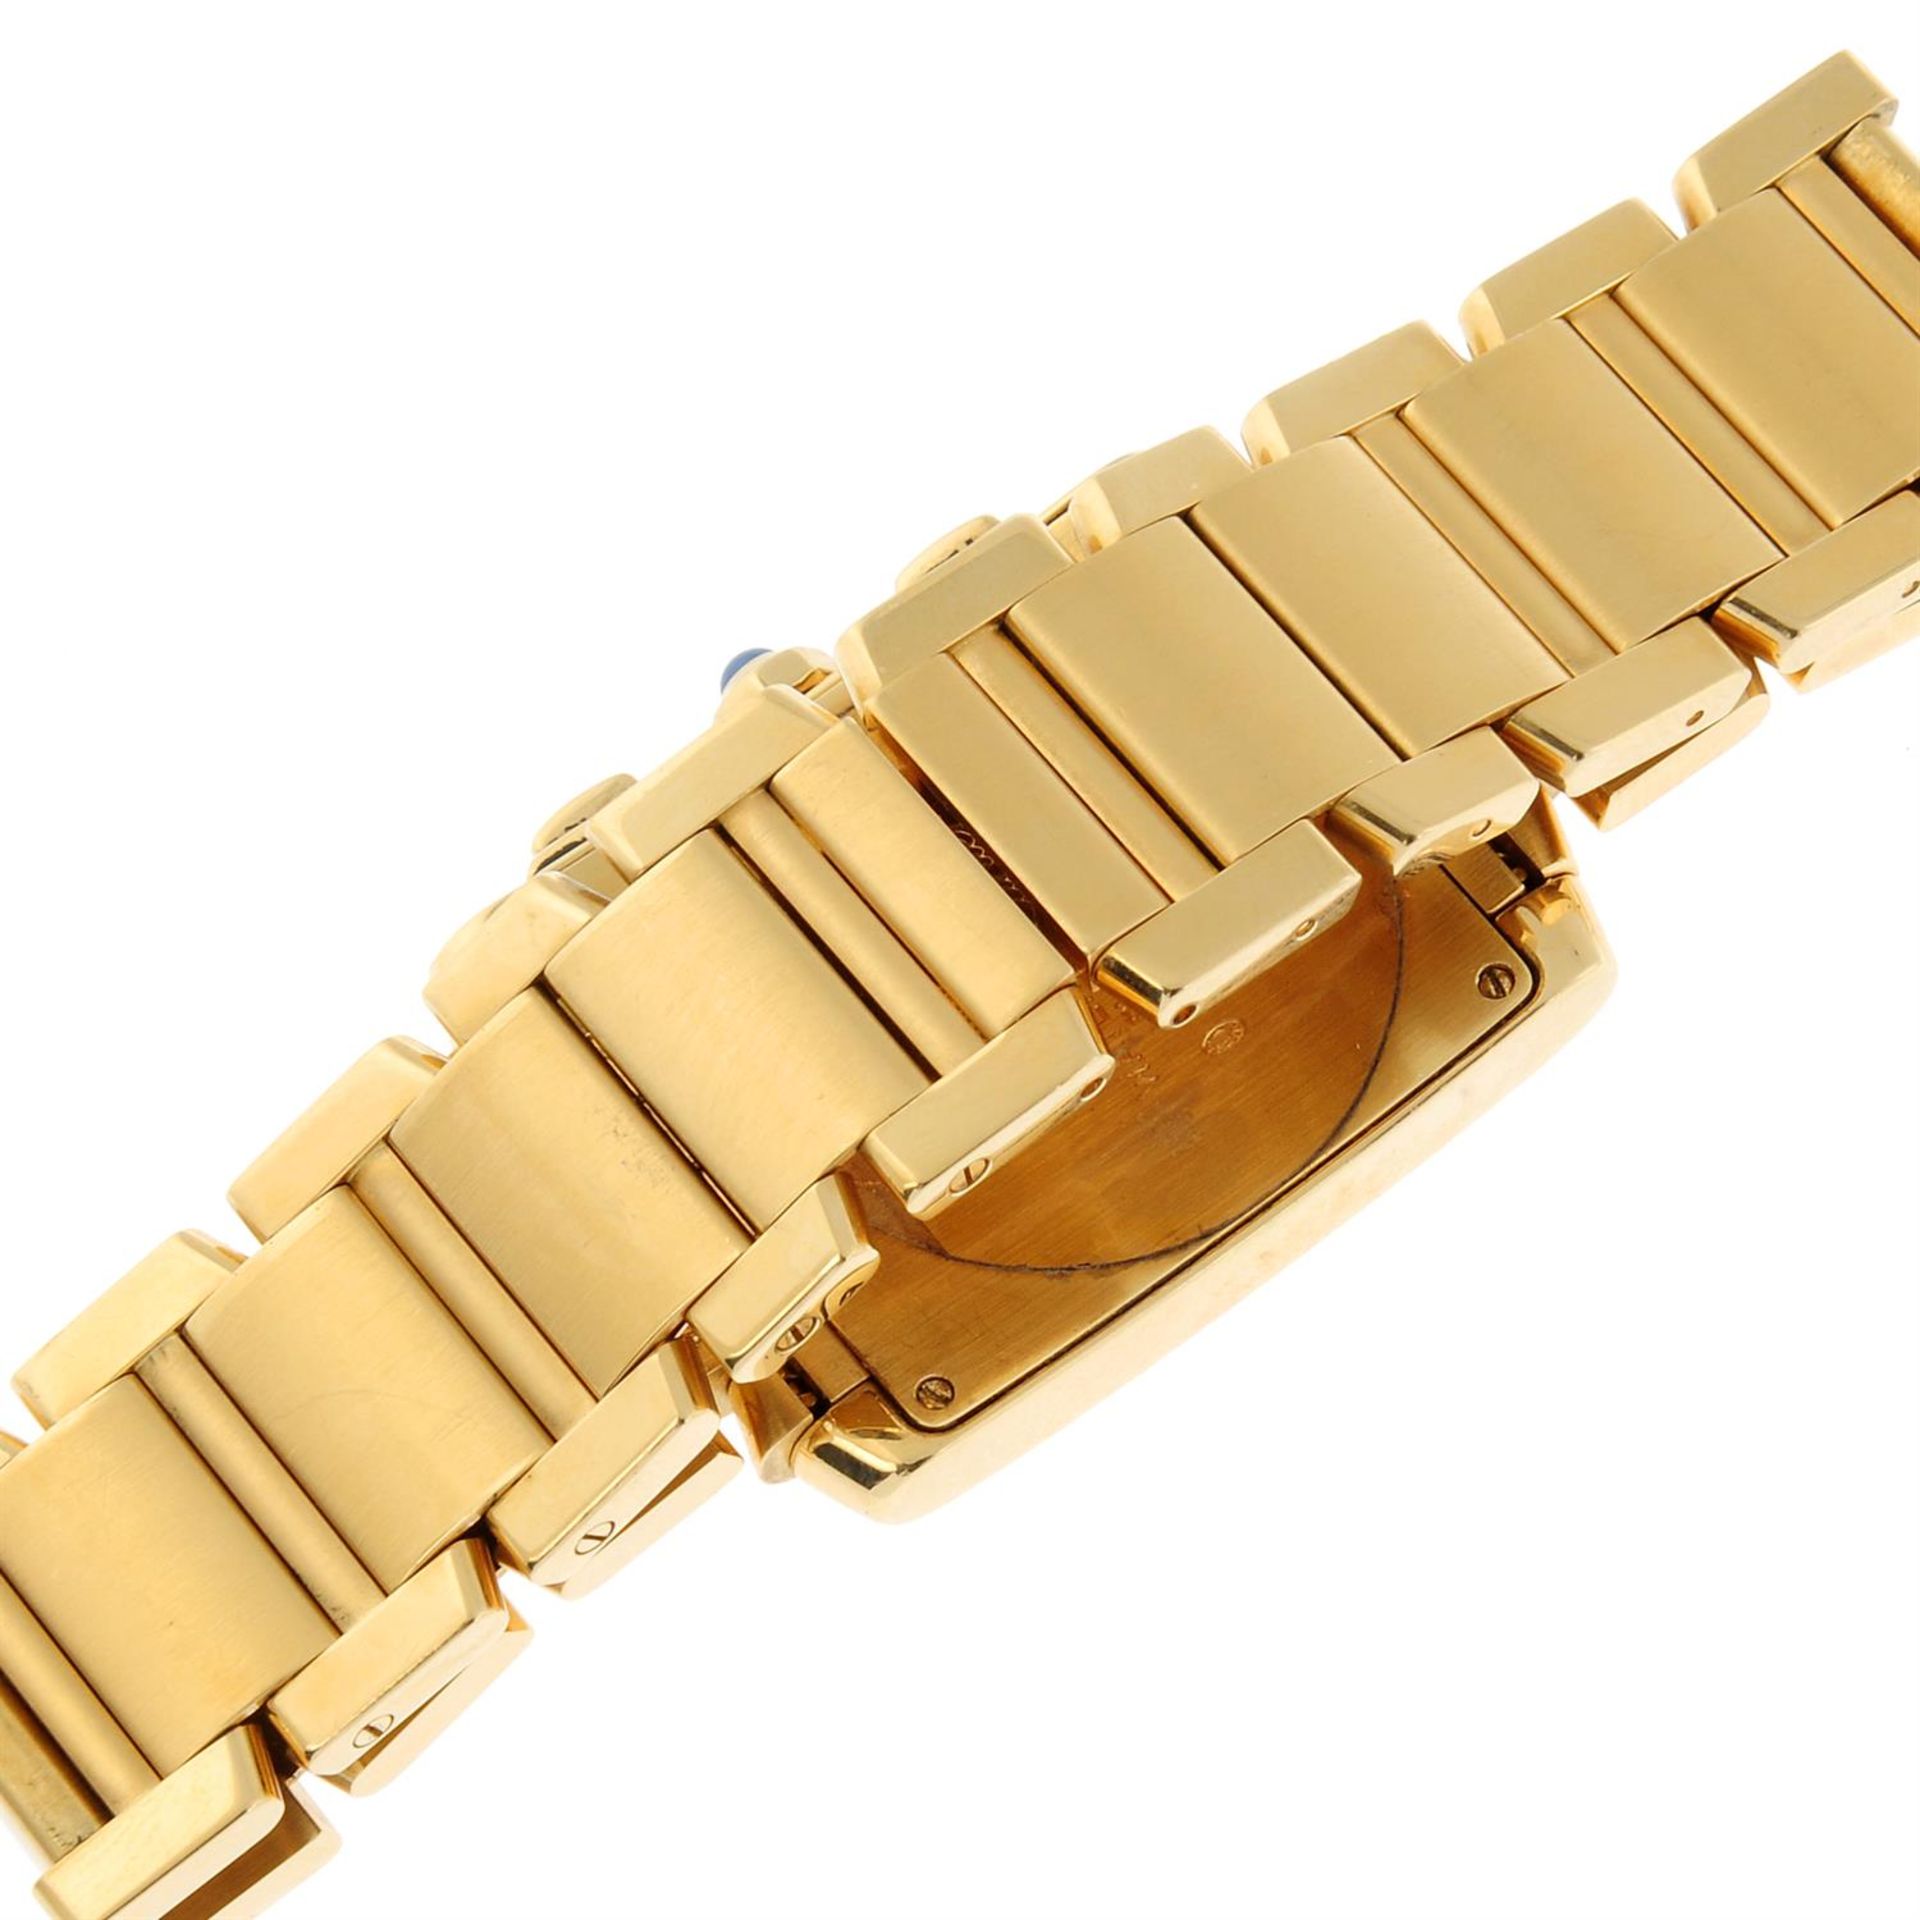 CARTIER - an 18ct yellow gold Tank Francaise chronograph bracelet watch, 28mm. - Bild 2 aus 6